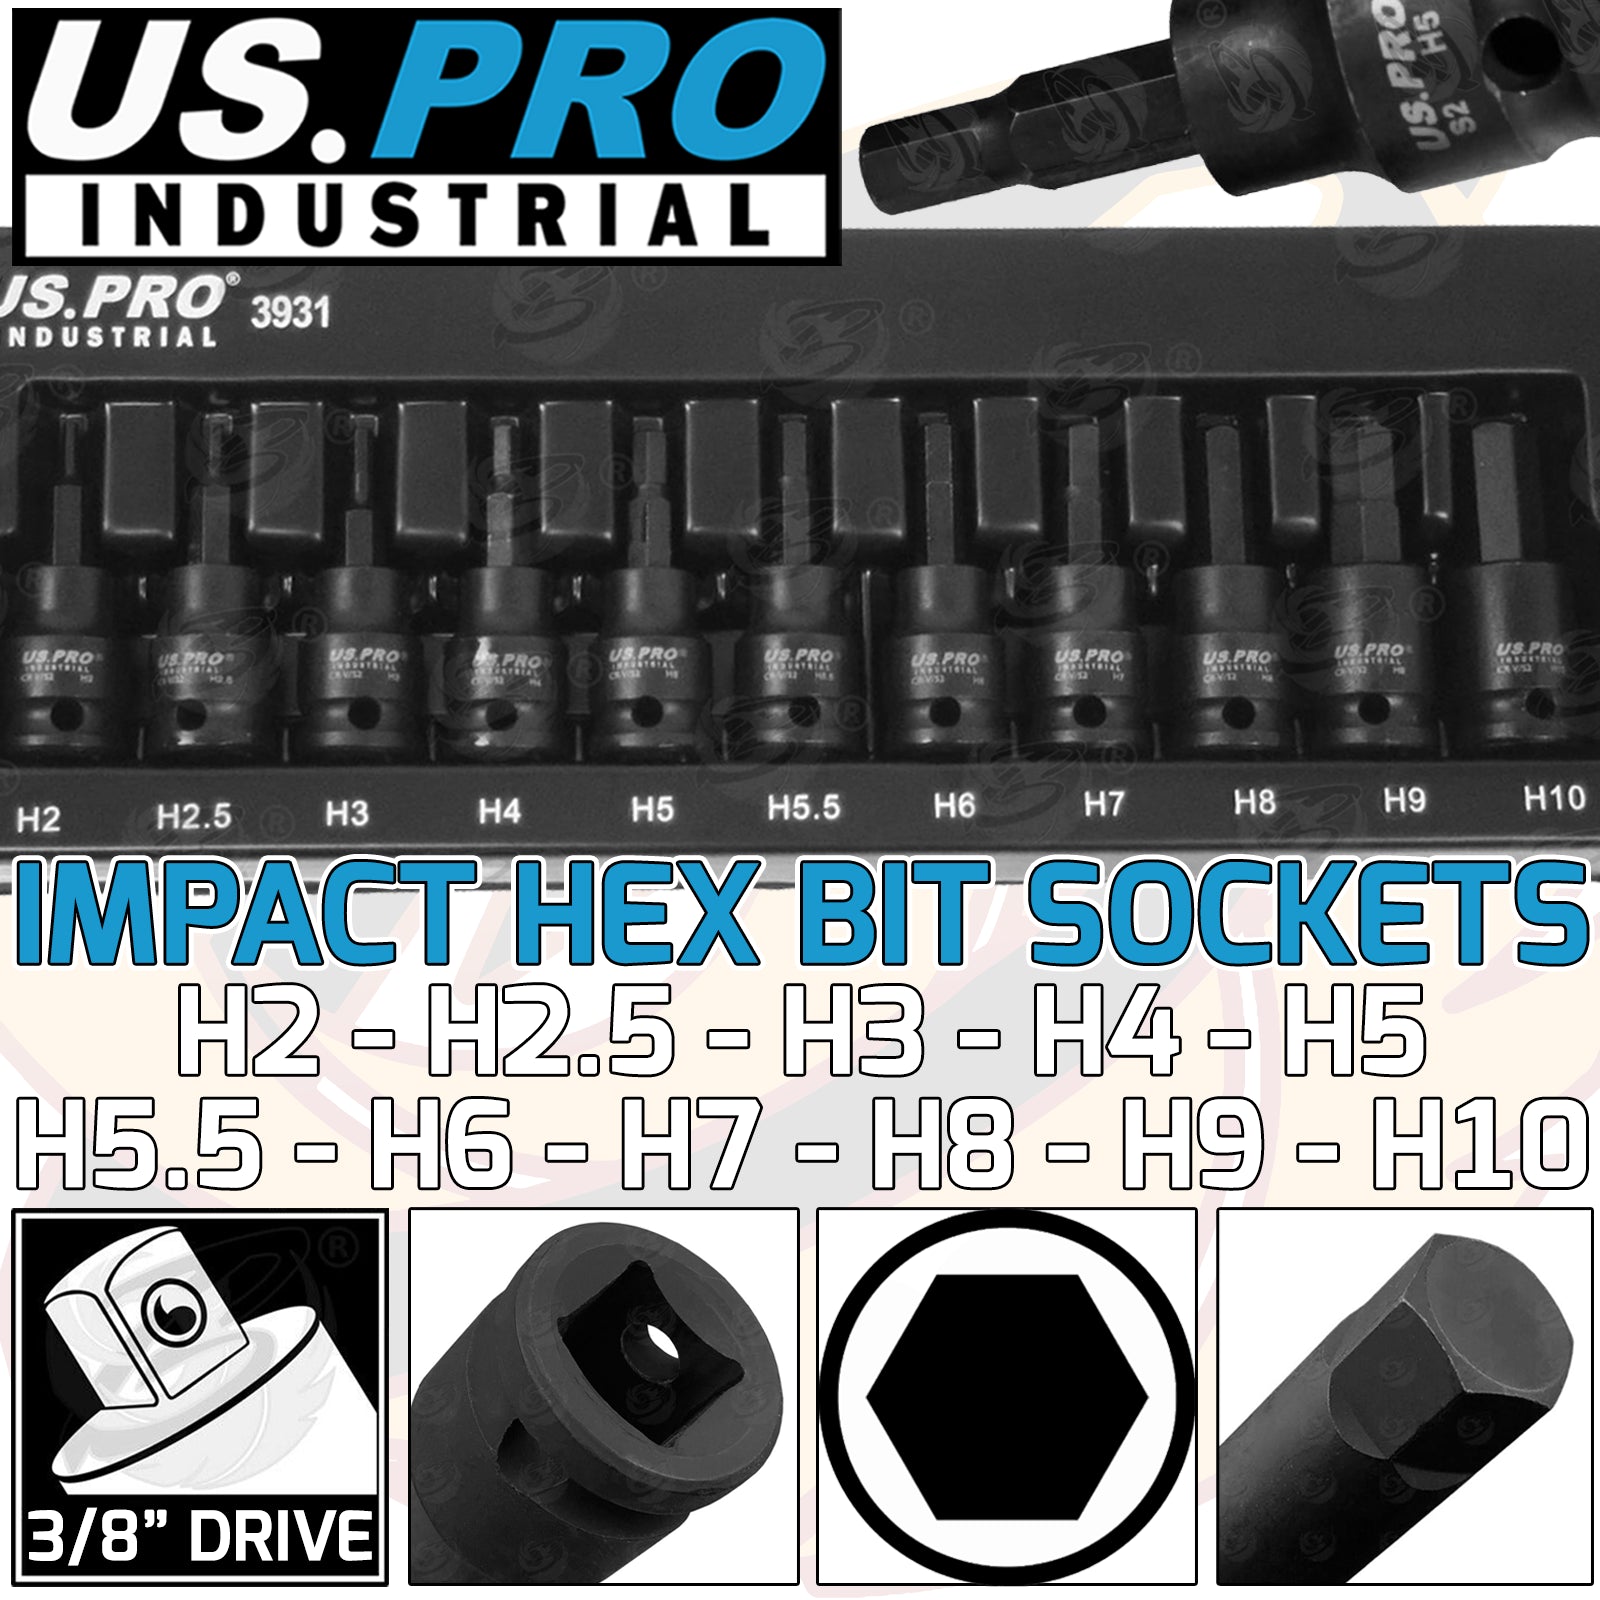 US PRO INDUSTRIAL 11PCS 3/8" DRIVE IMPACT HEX BIT SOCKETS H2 - H10